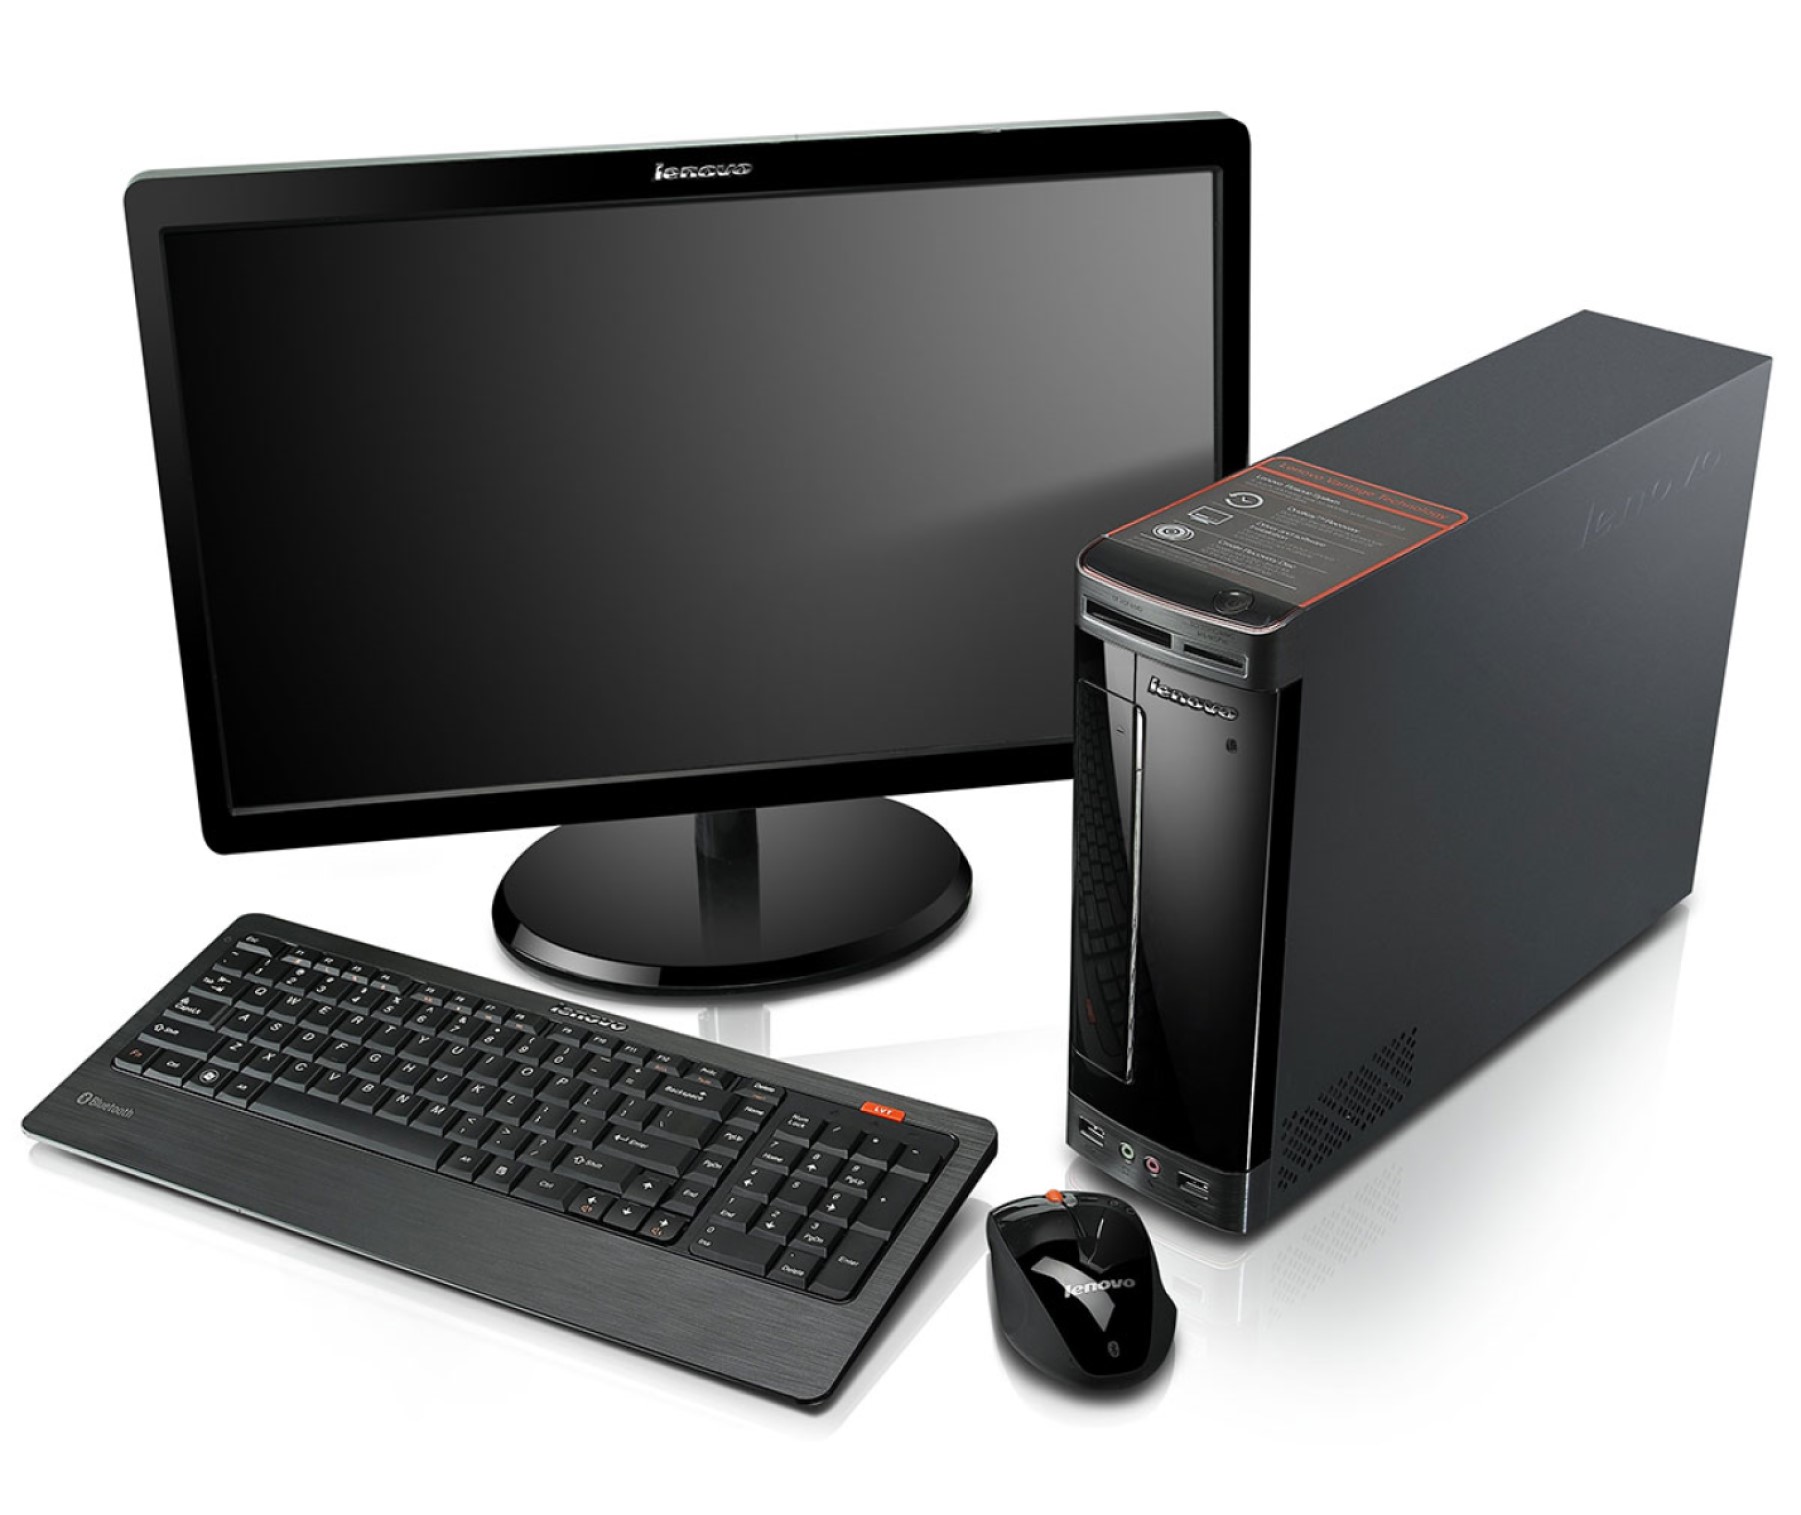 Компьютер страна производитель. Компьютер (сист. Блок, монитор TFT 27 Acer Black). Инв.. Системный блок монитор клавиатура мышь. Lenovo h320 компьютер. Компьютер (монитор ЖК 22", системный блок, клавиатура, мышь).